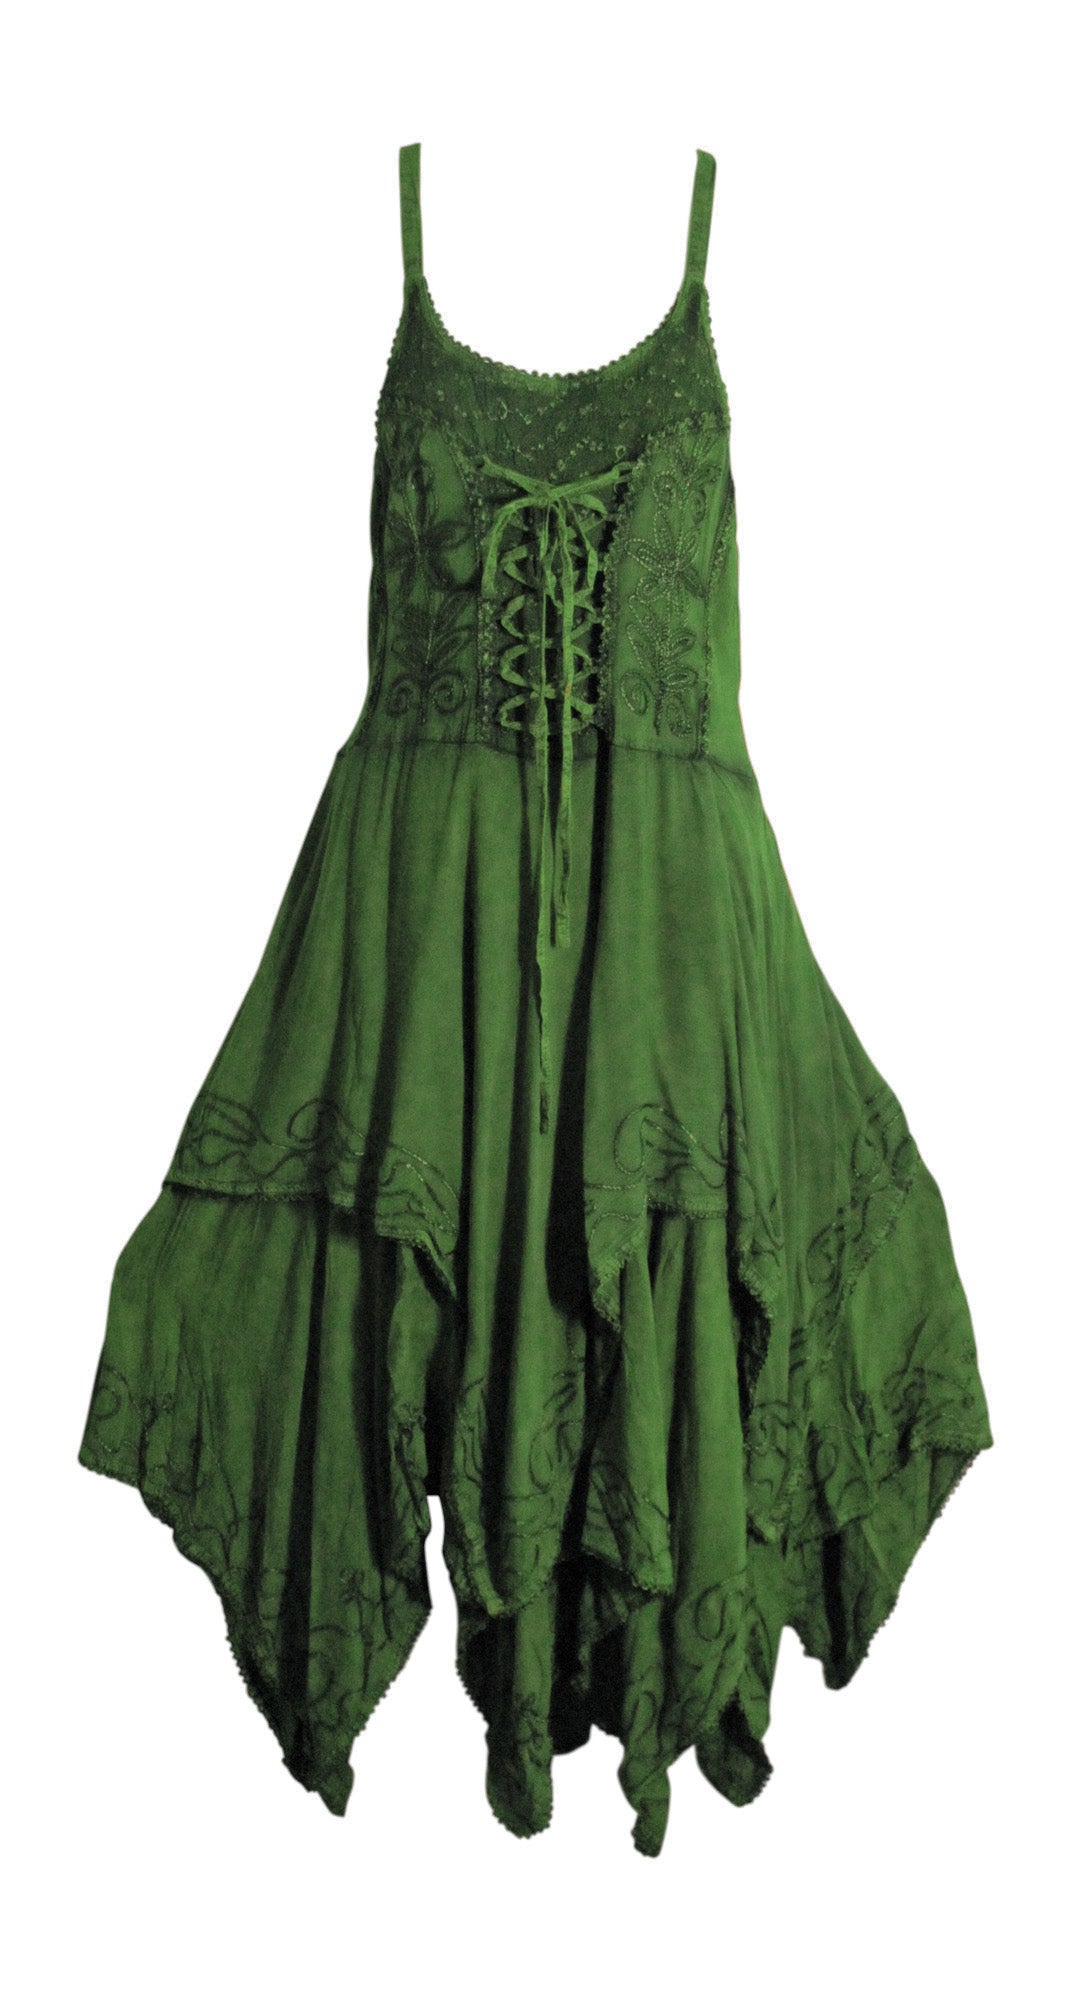 Missy Bohemian Renaissance Spaghetti Strap Layered Embroidered Long Dress - Ambali Fashion Dresses 